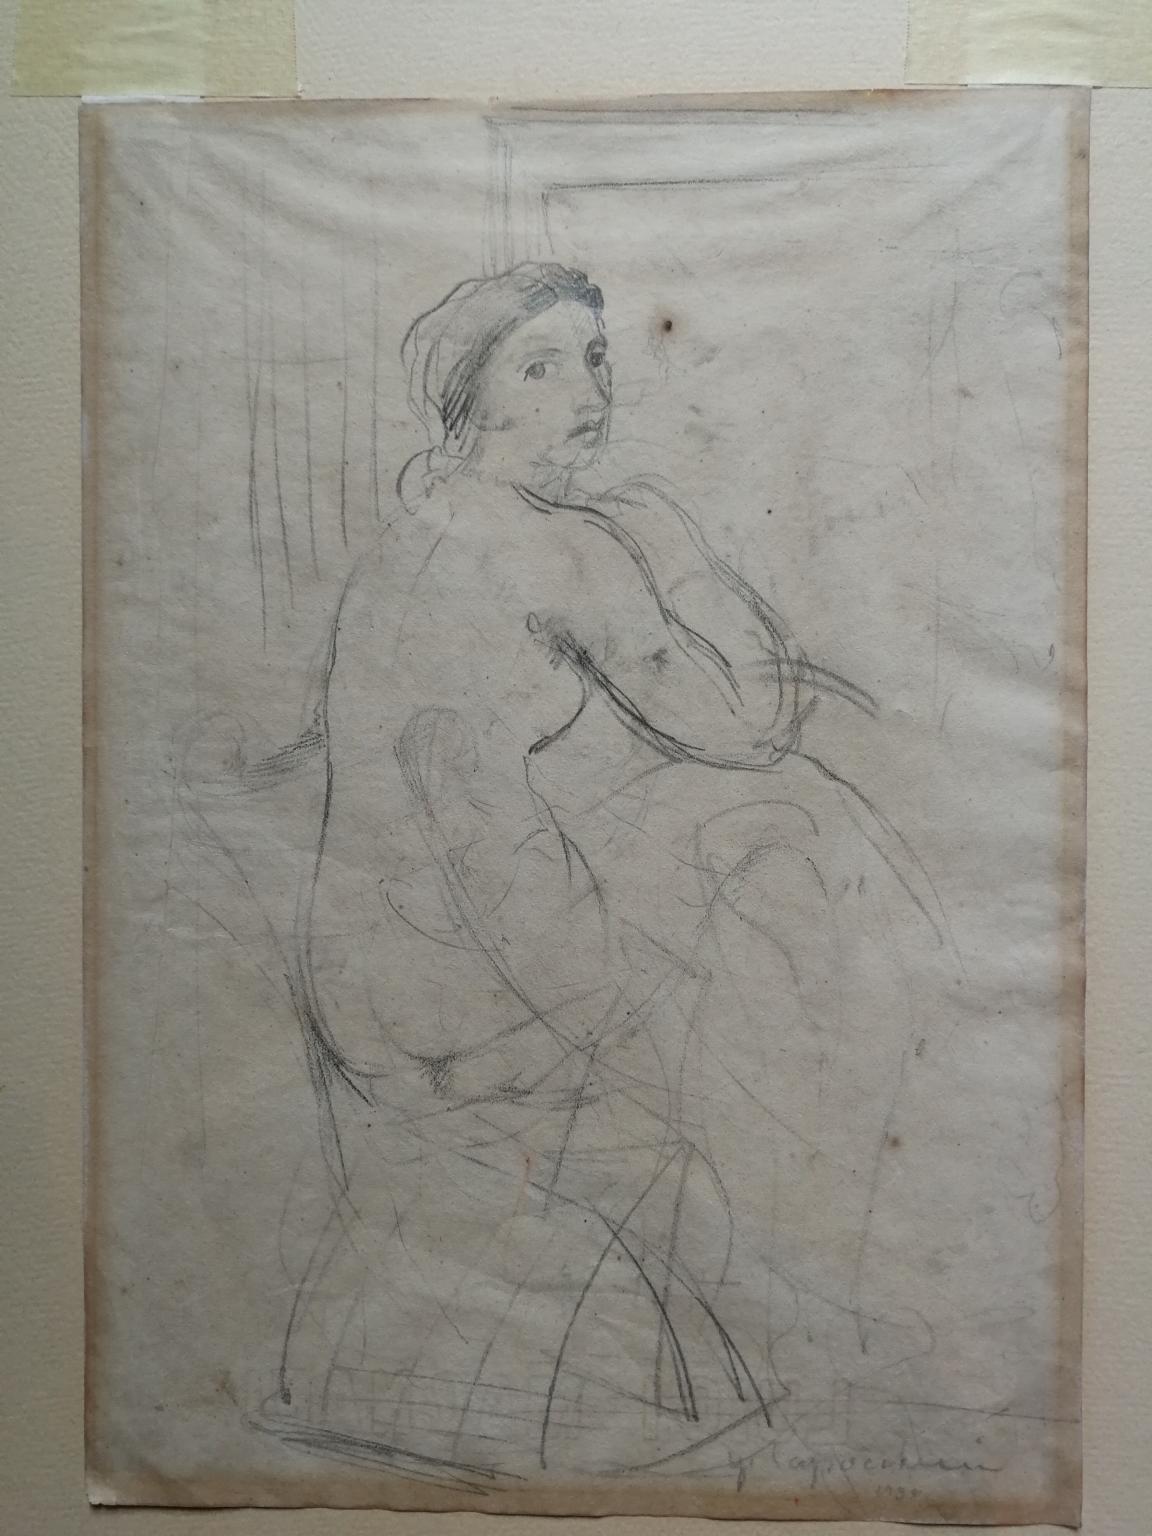 Ugo Capocchini Nude – Disegno front retro figurativo toscano nudo femminile del XX secolo